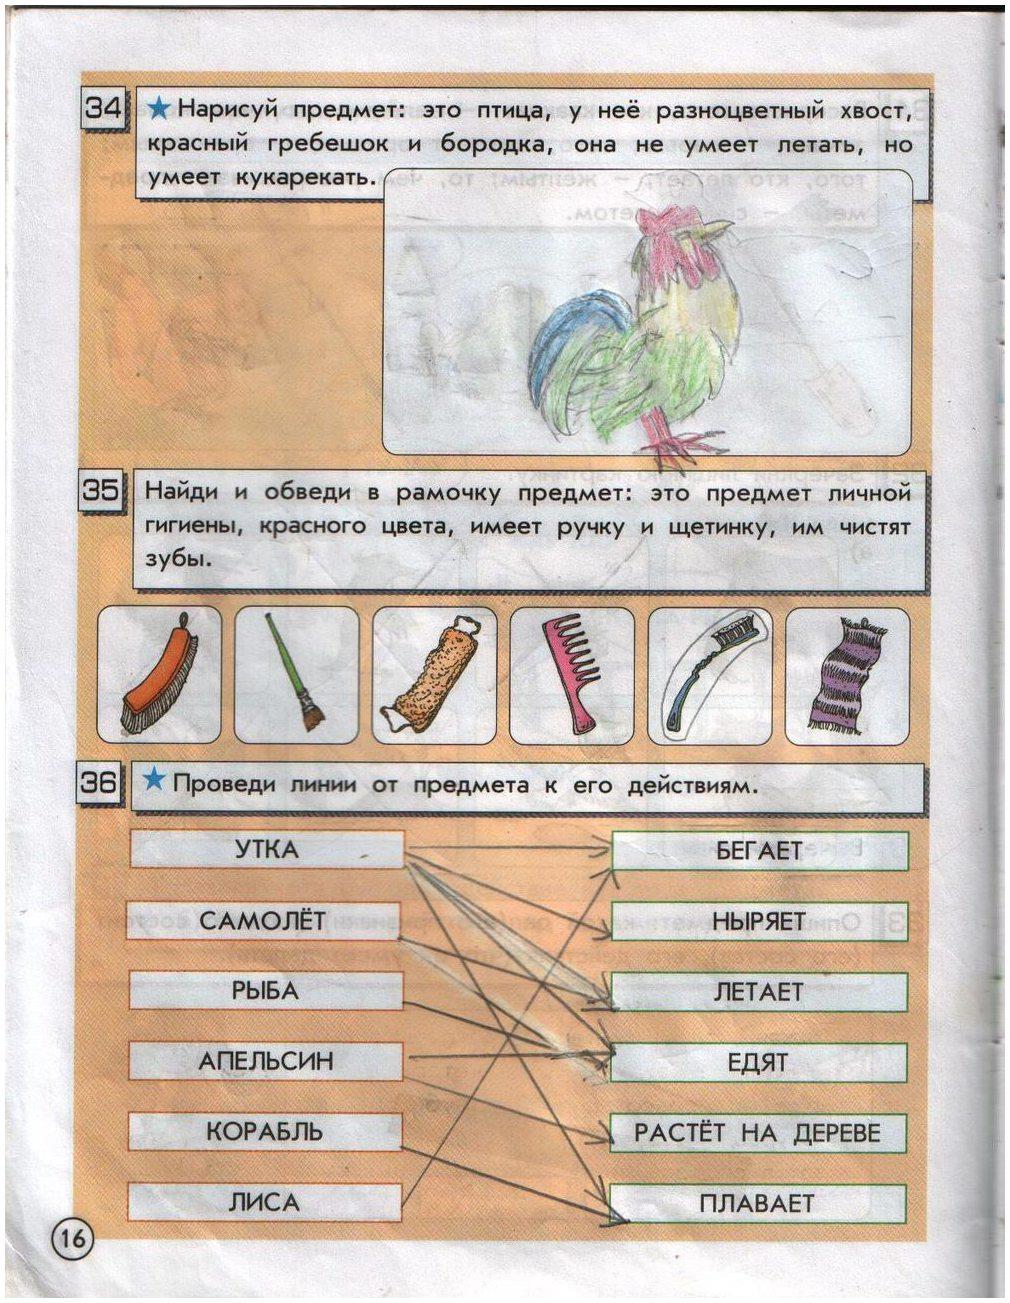 ГДЗ Информатика 2 класс часть 1 страница 16 Горячев, Горина